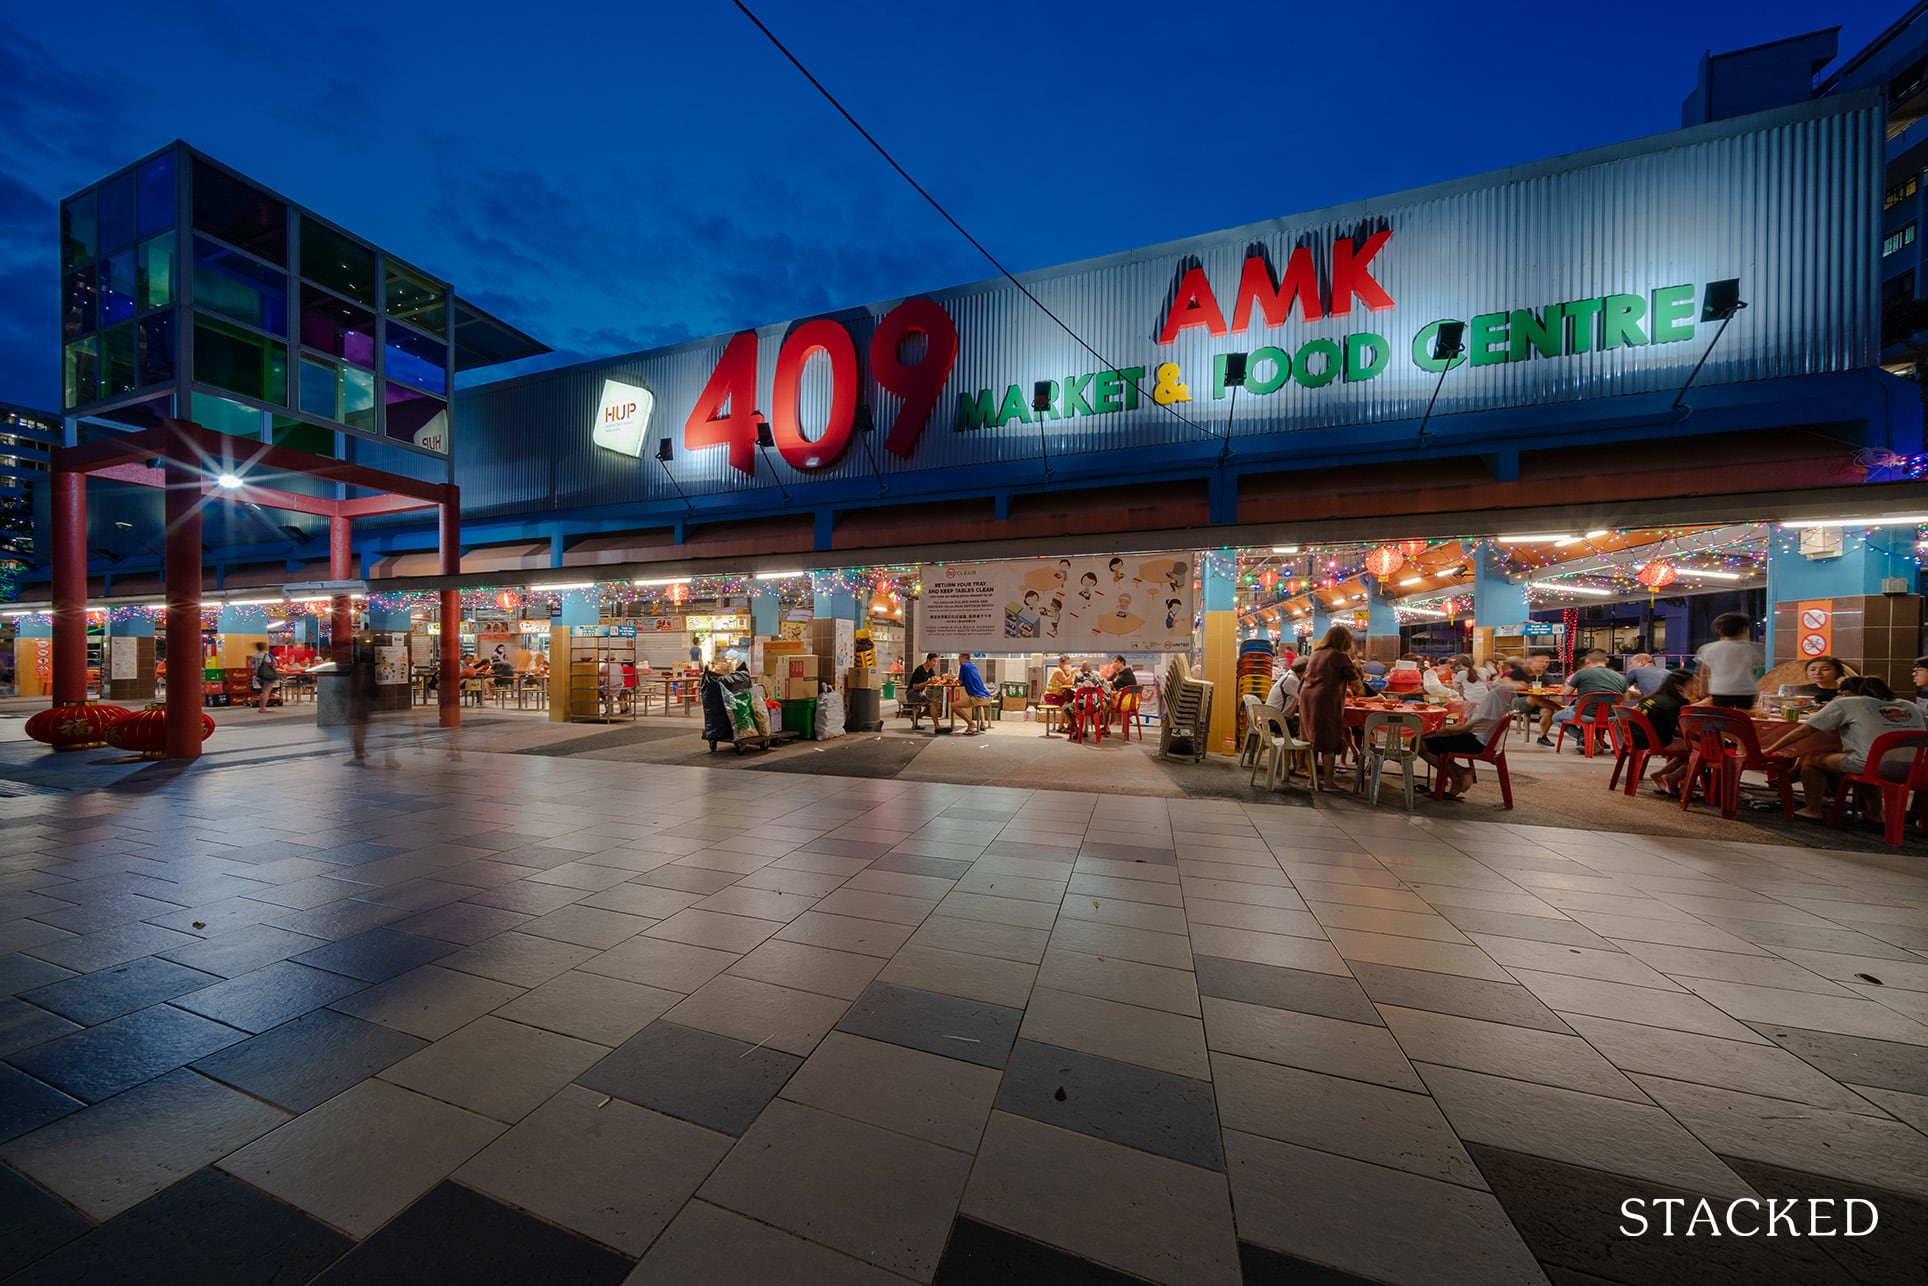 Ang Mo Kio food centre